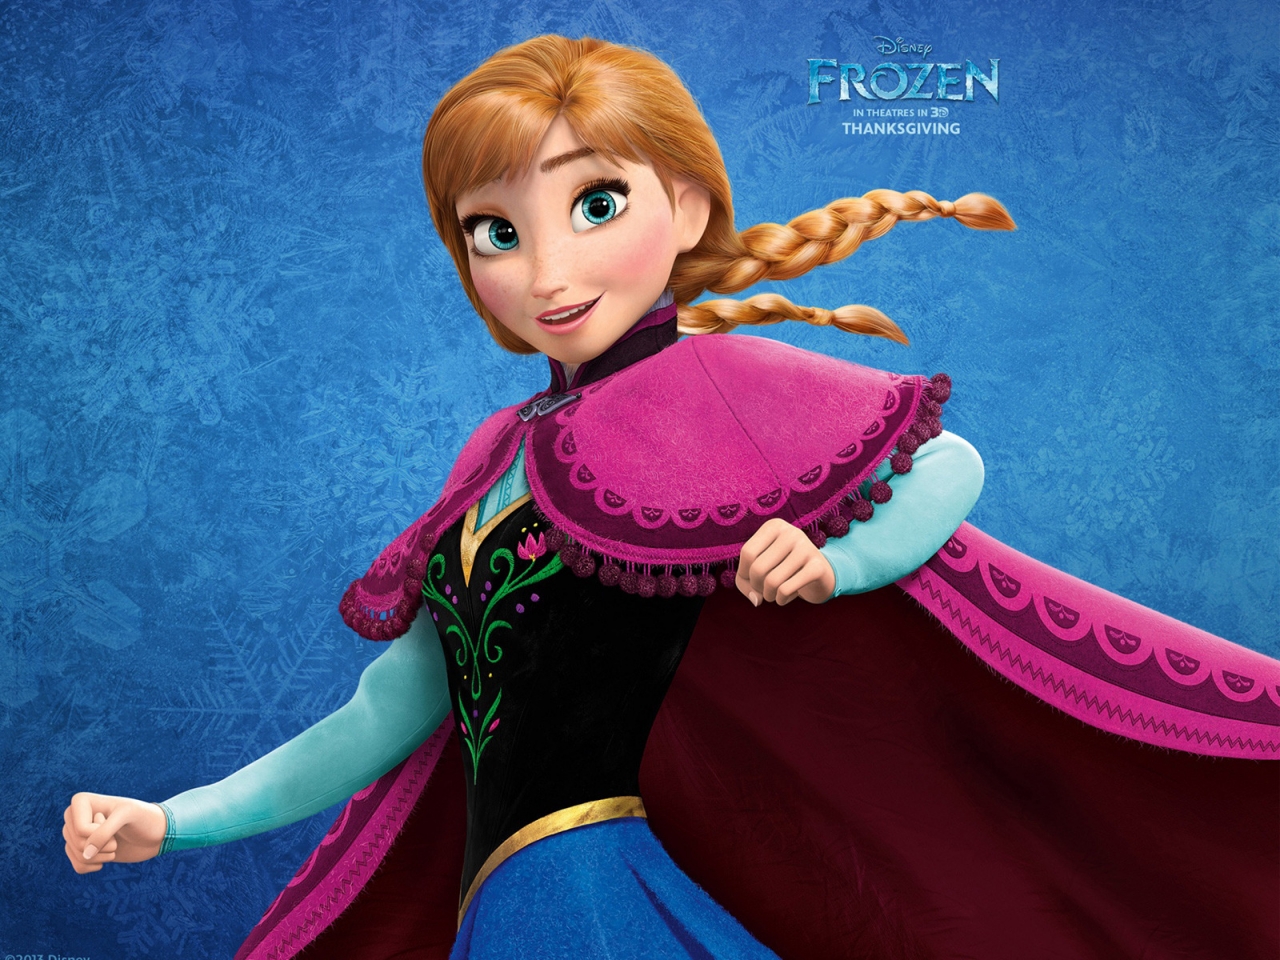 Frozen Anna for 1280 x 960 resolution